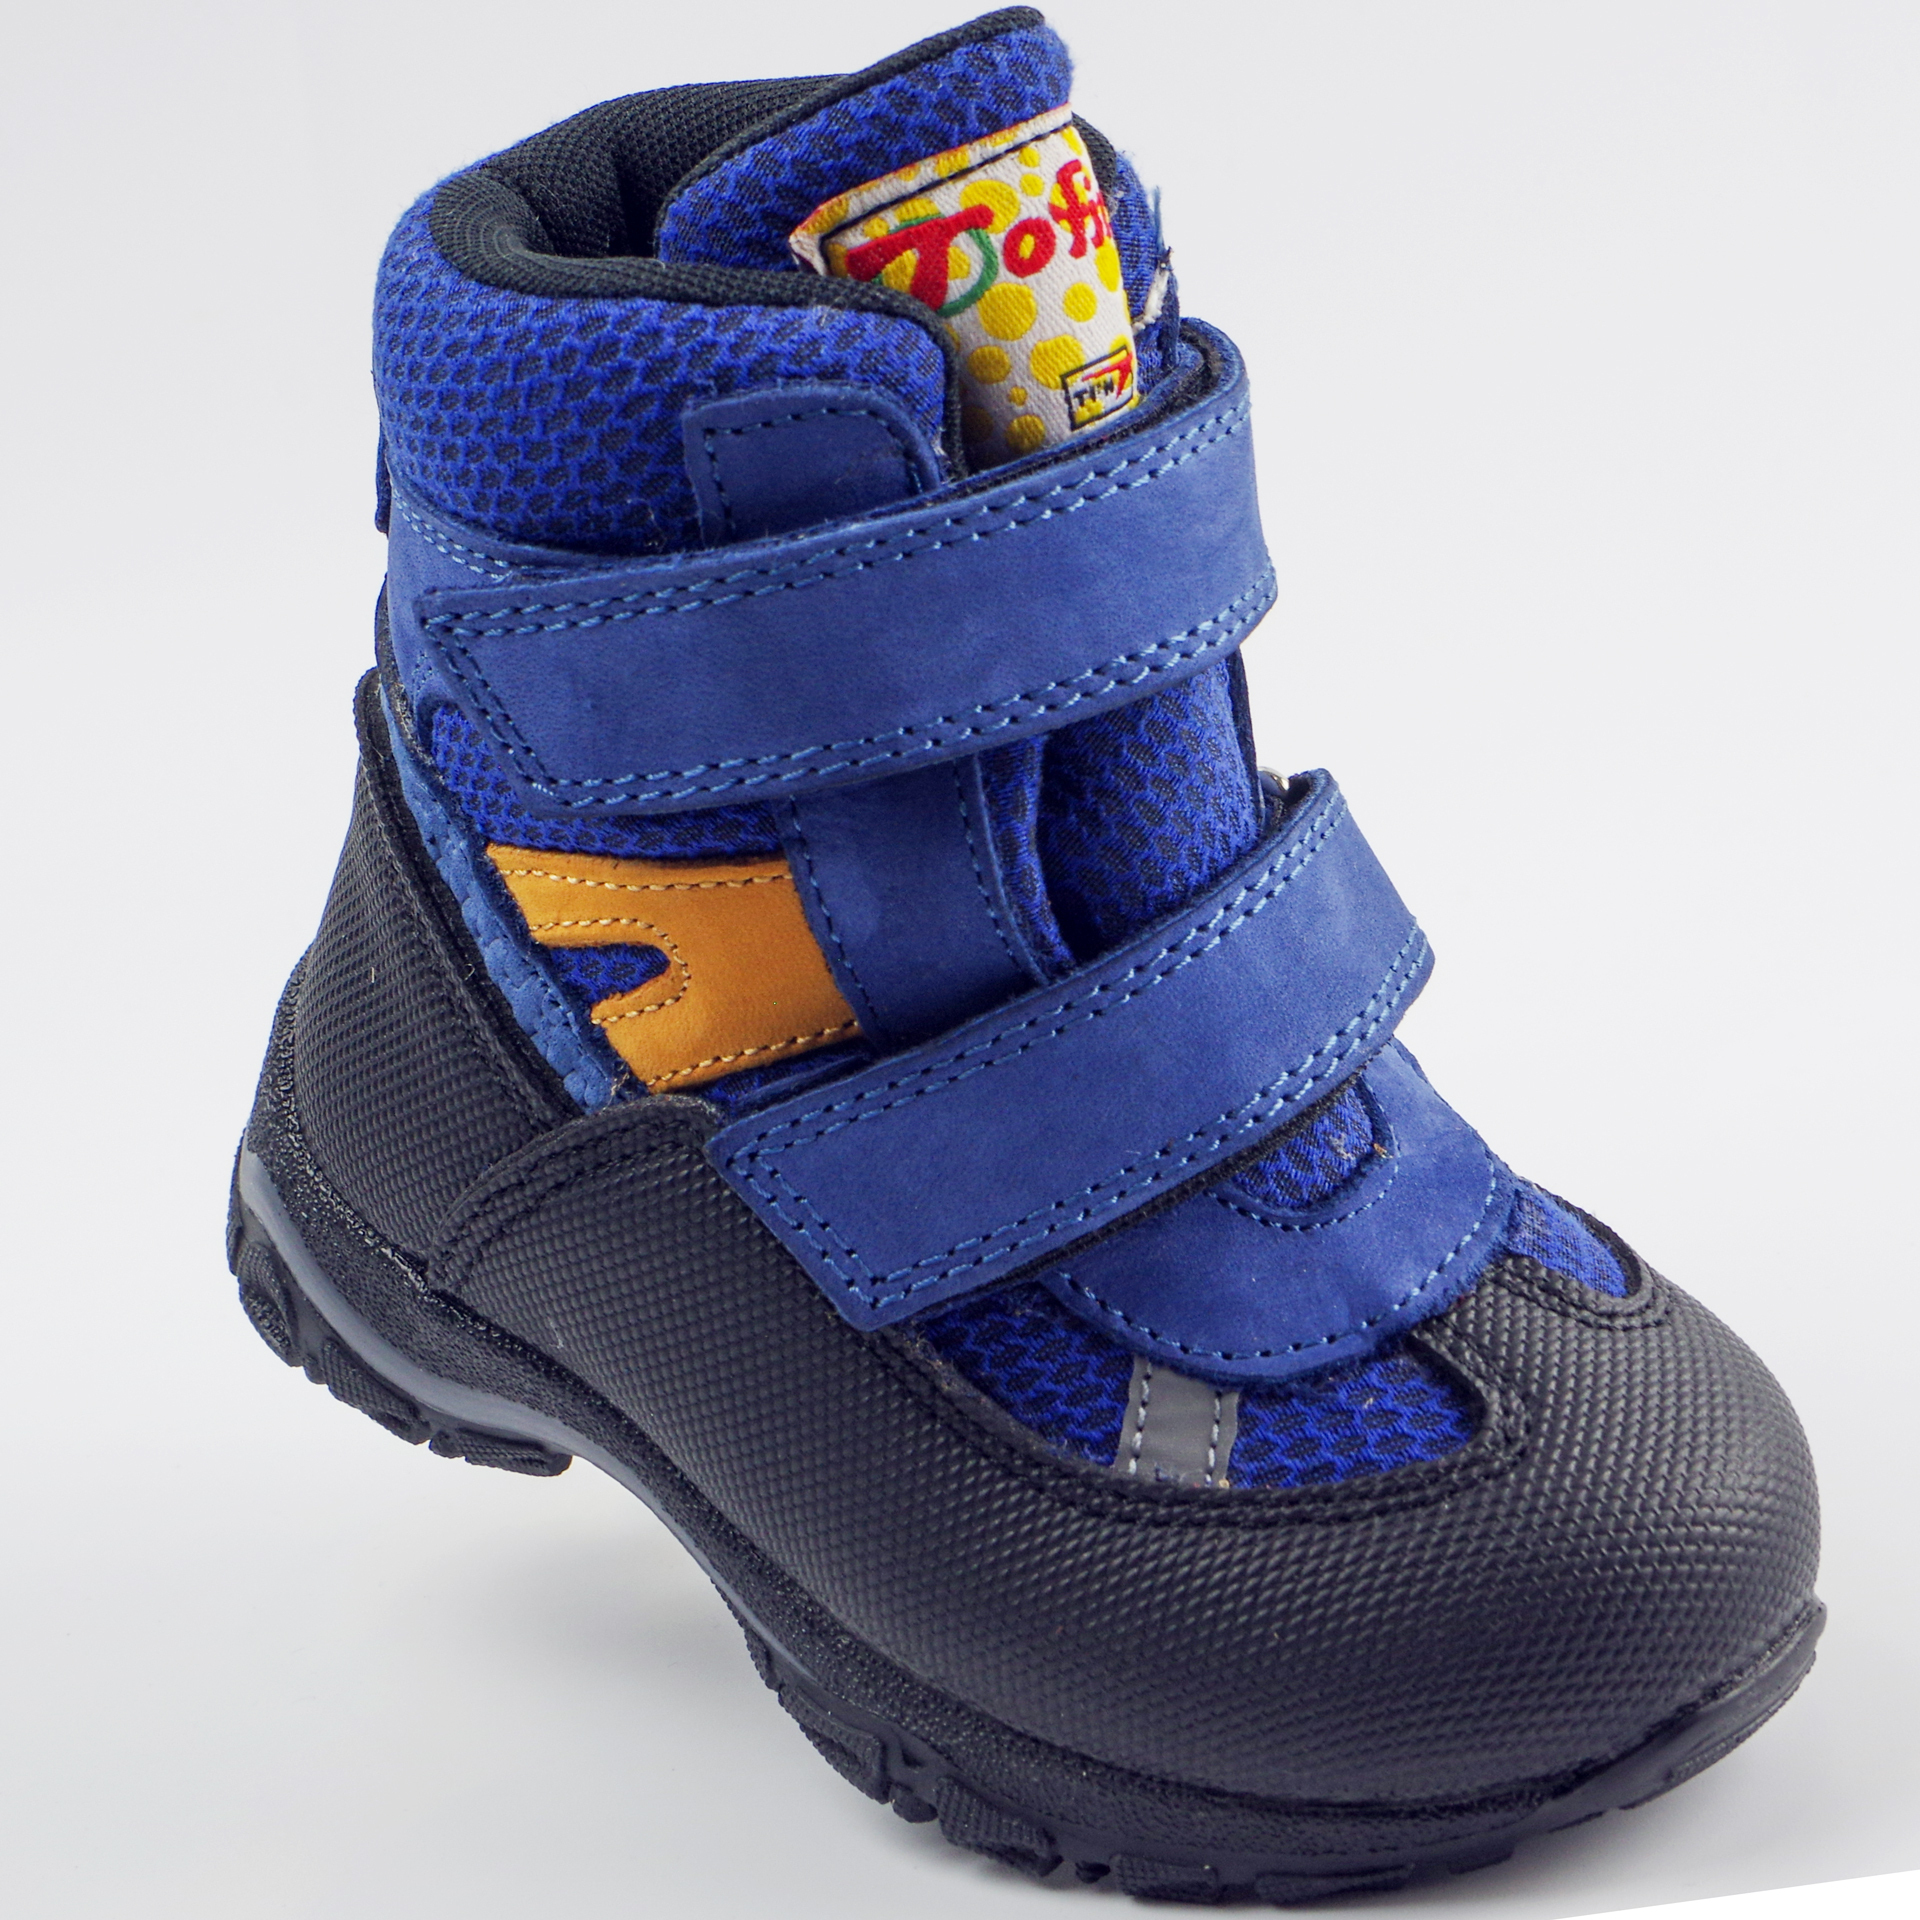 Зимние мембранные ботинки (2146) материал Мембрана, цвет Синий  для мальчиков 22-25 размеры – Sole Kids. Фото 1